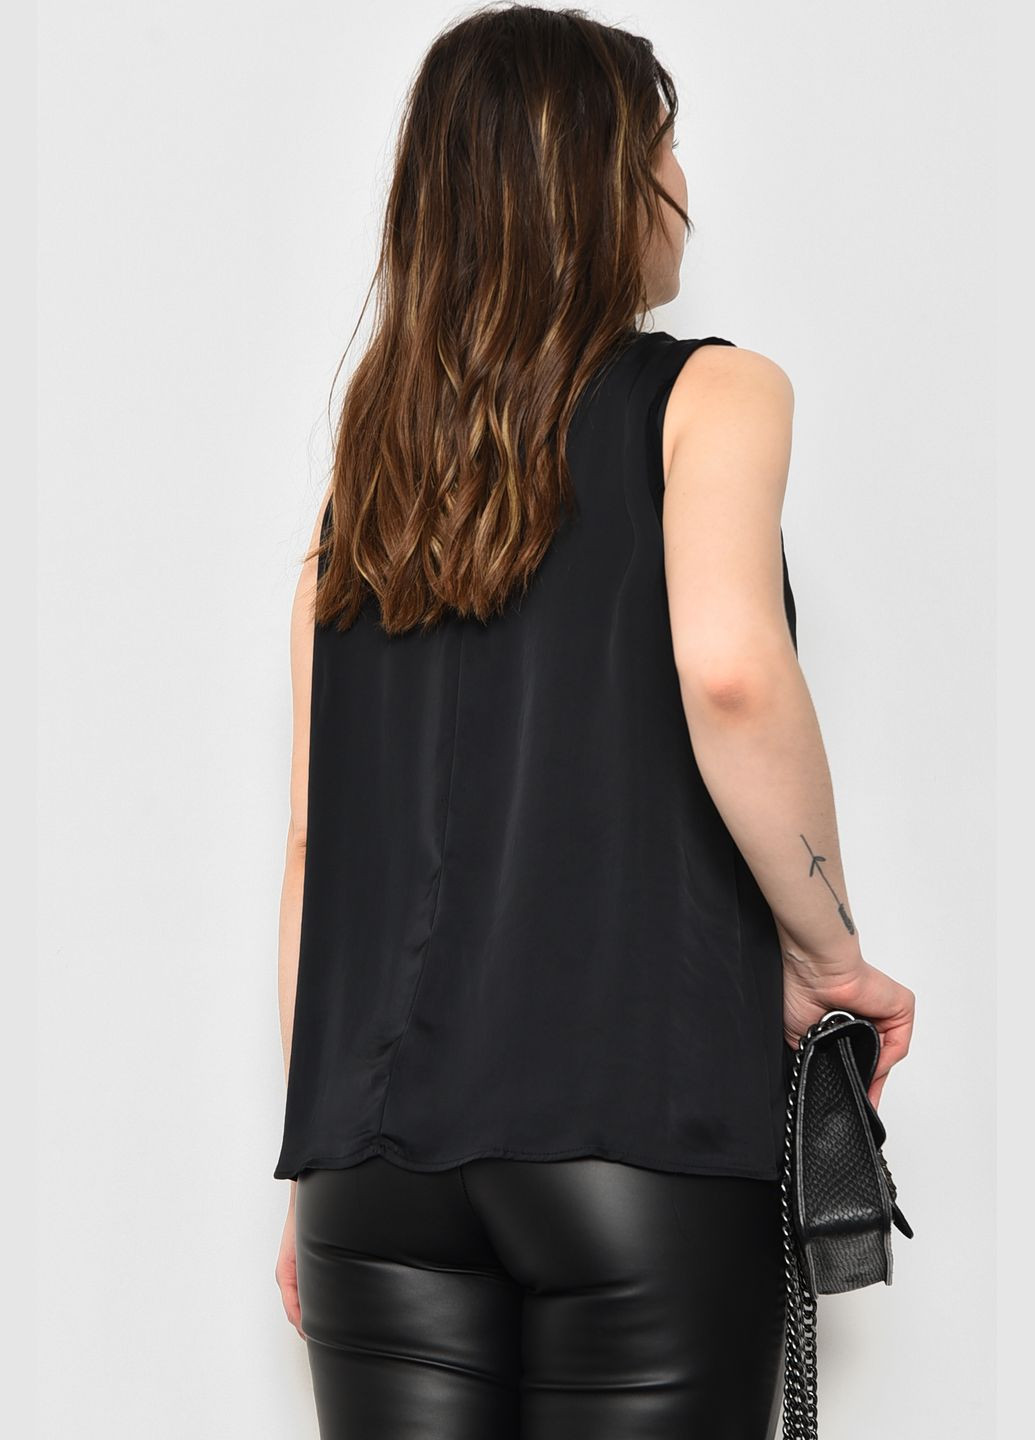 Чёрная блуза женская без рукавов черного цвета с баской Let's Shop